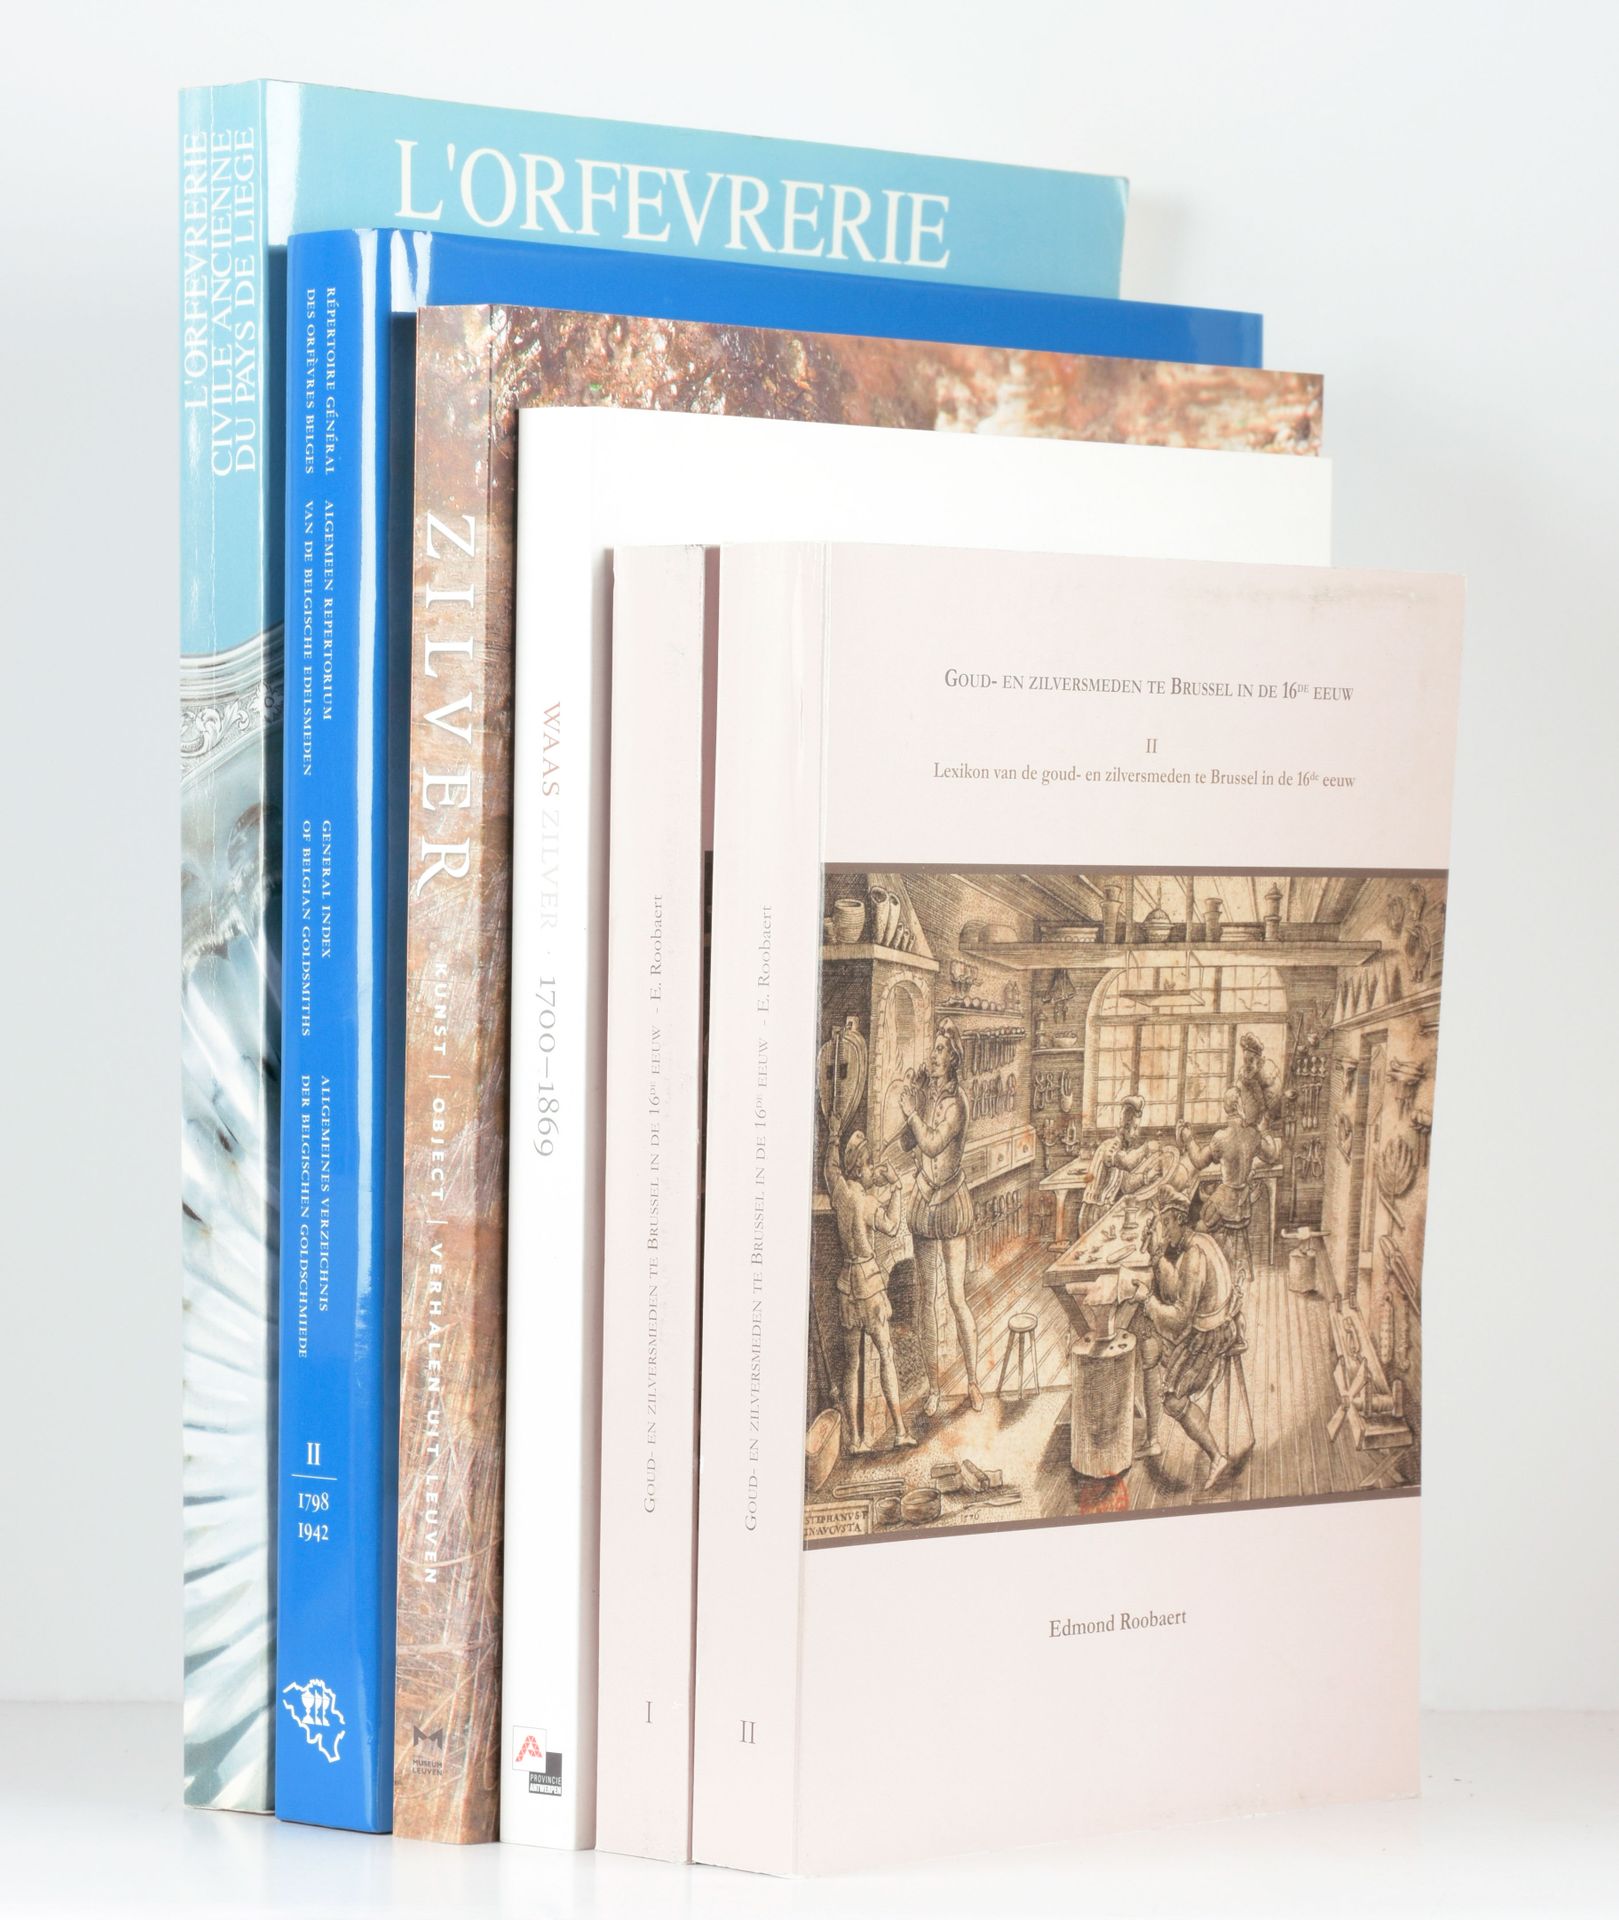 ROOBAERT, Edmond Goud- en zilversmeden te Brussel in de 16de eeuw

2 vols. In-4°&hellip;